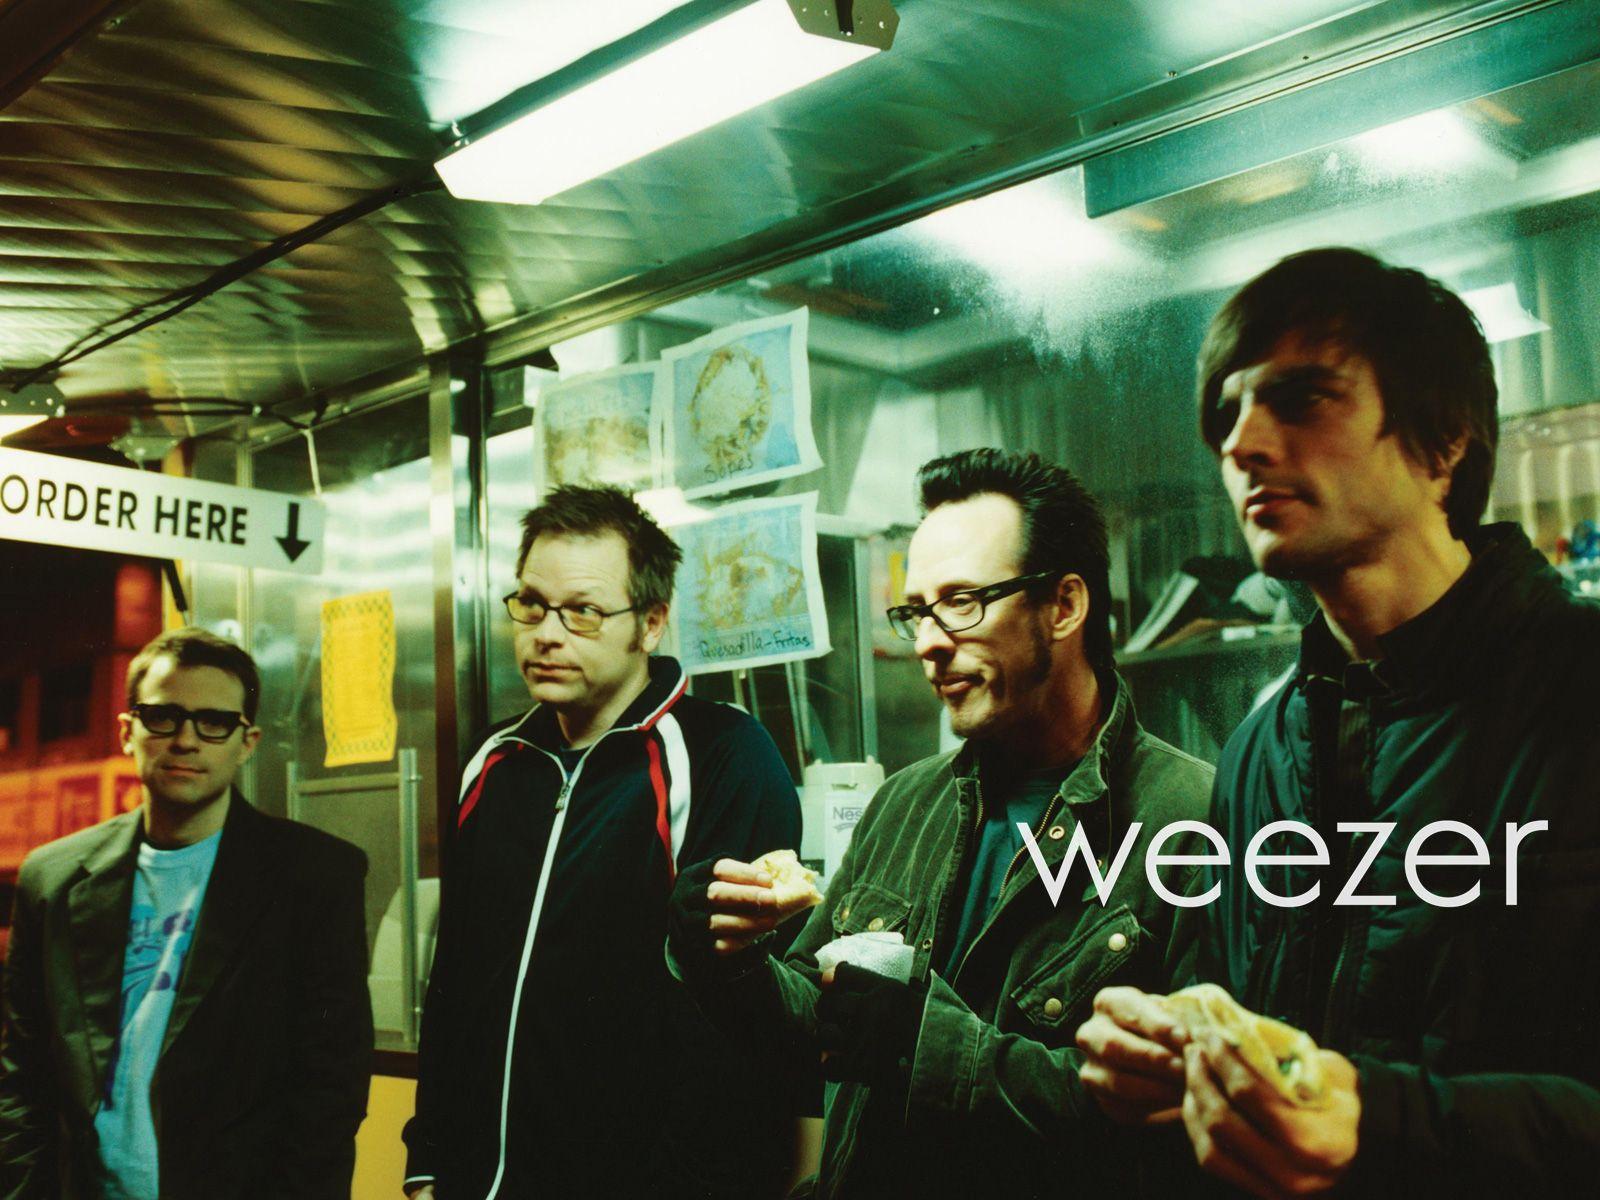 Top Weezer Wallpaper Free Wallpaper Hub